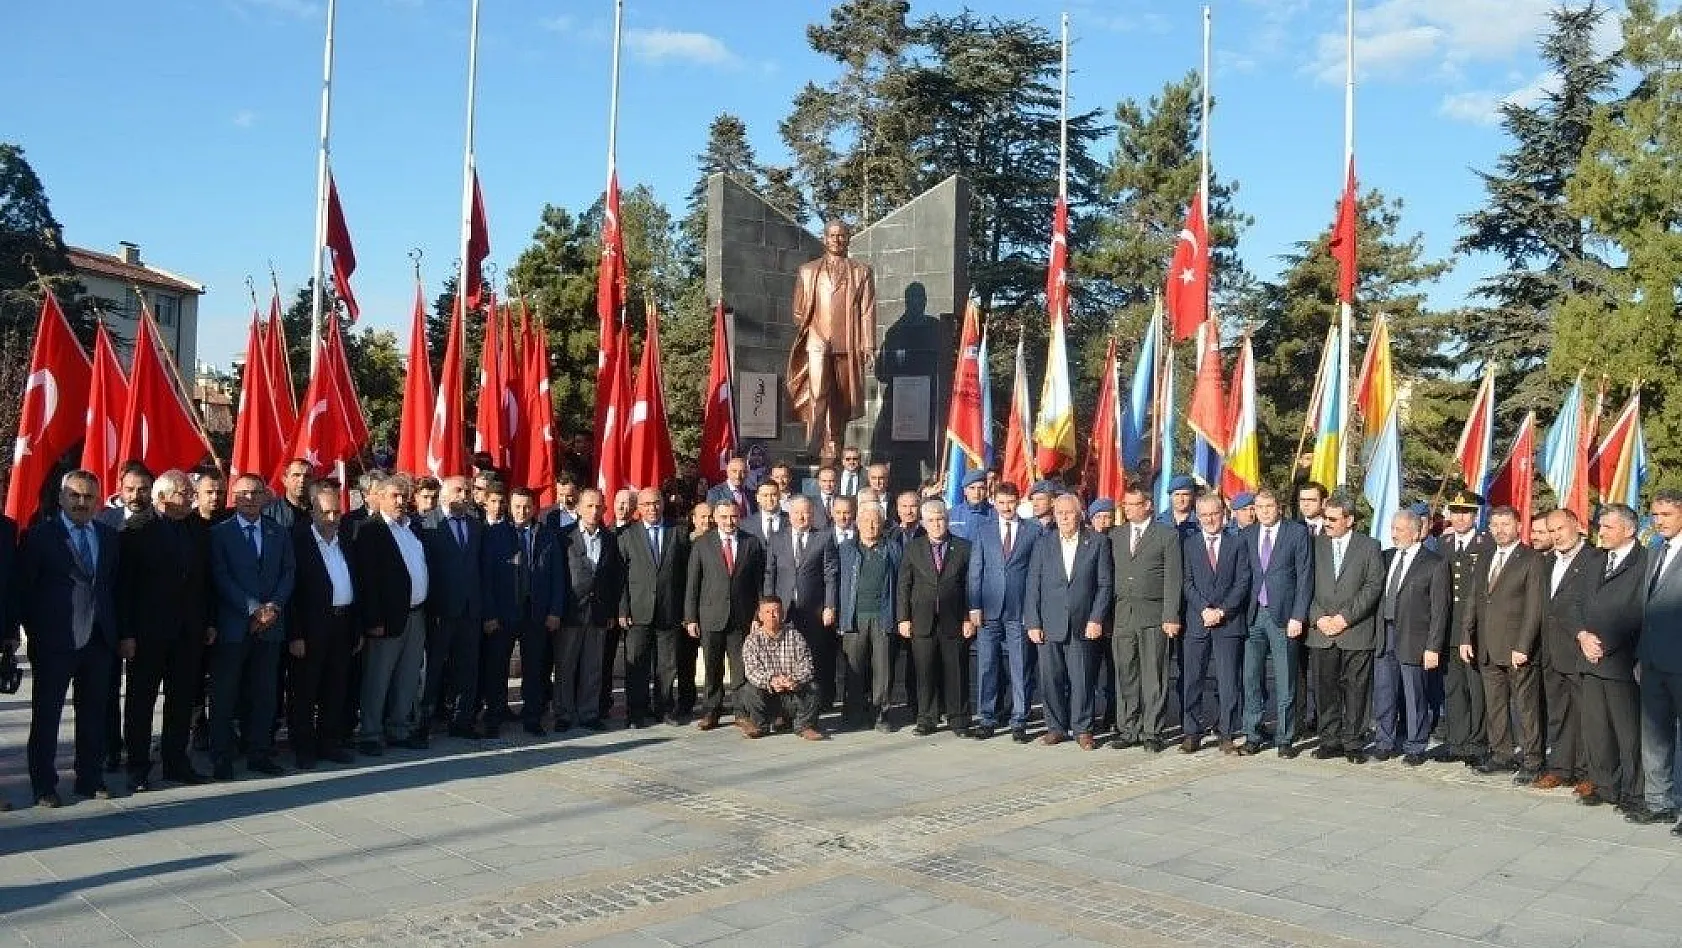 Develi'de 10 Kasım Atatürk'ü Anma Töreni düzenlendi
